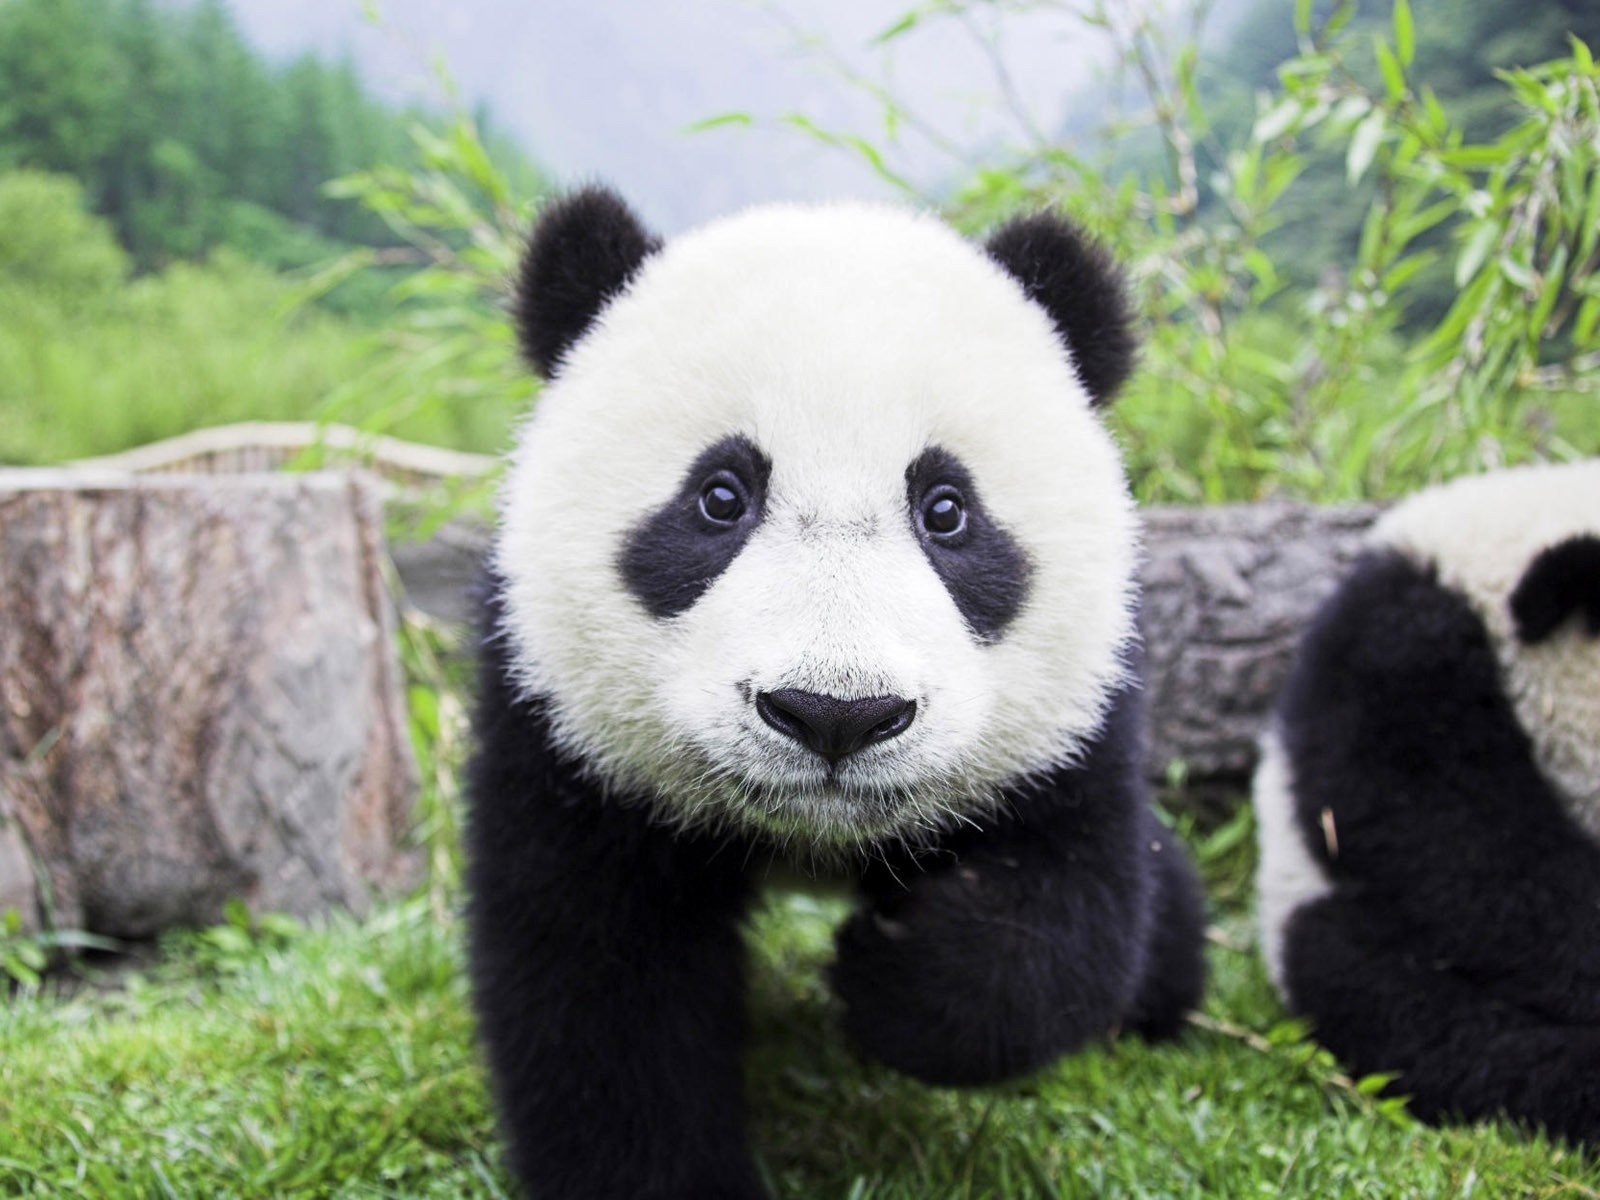 Скачать обои бесплатно Животные, Панда картинка на рабочий стол ПК